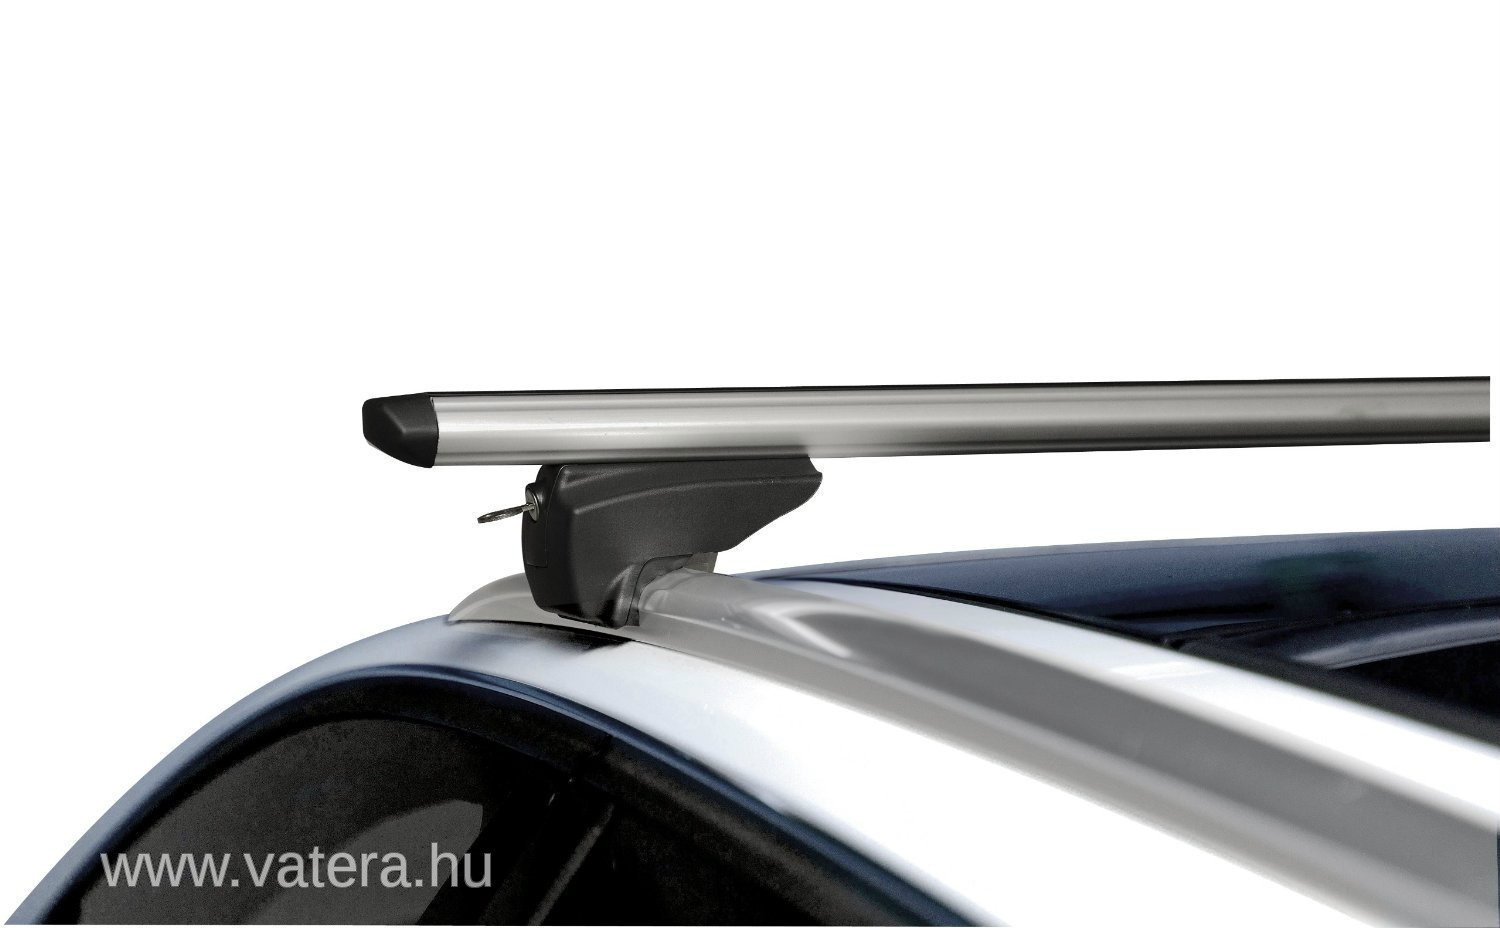 Багажник на крышу Menabo Tiger Black 120 см на интегрированные рейлинги. Багажник на крышу Audi q5 (с релингами), Votex. Фиат Толенто 2016 рейлинги на крышу. Багажник на крышу Jaguar XF. Купить интегрированные рейлинги